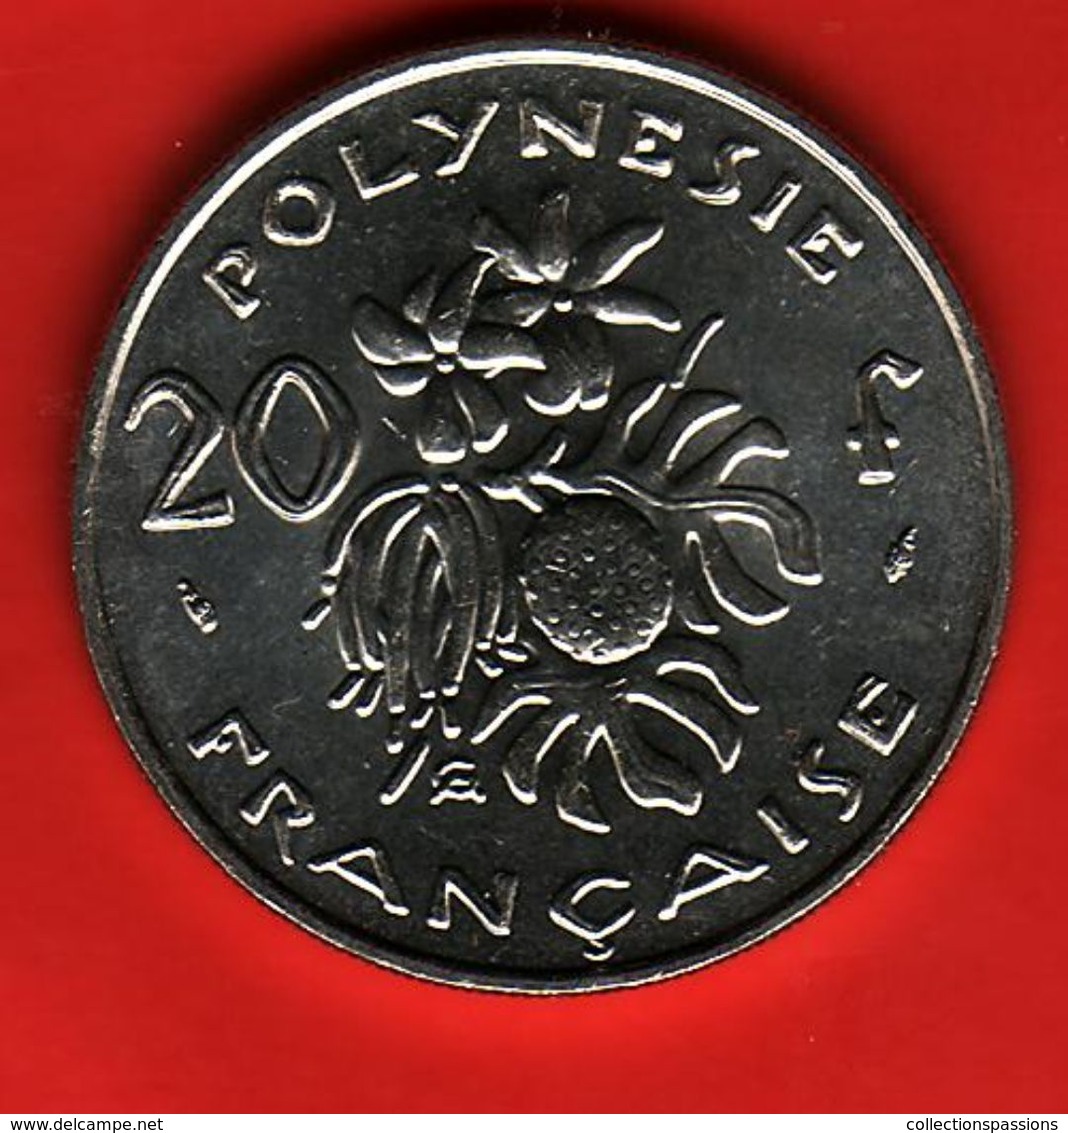 - POLYNESIE FRANCAISE - 20 Francs - 1993 - - Frans-Polynesië